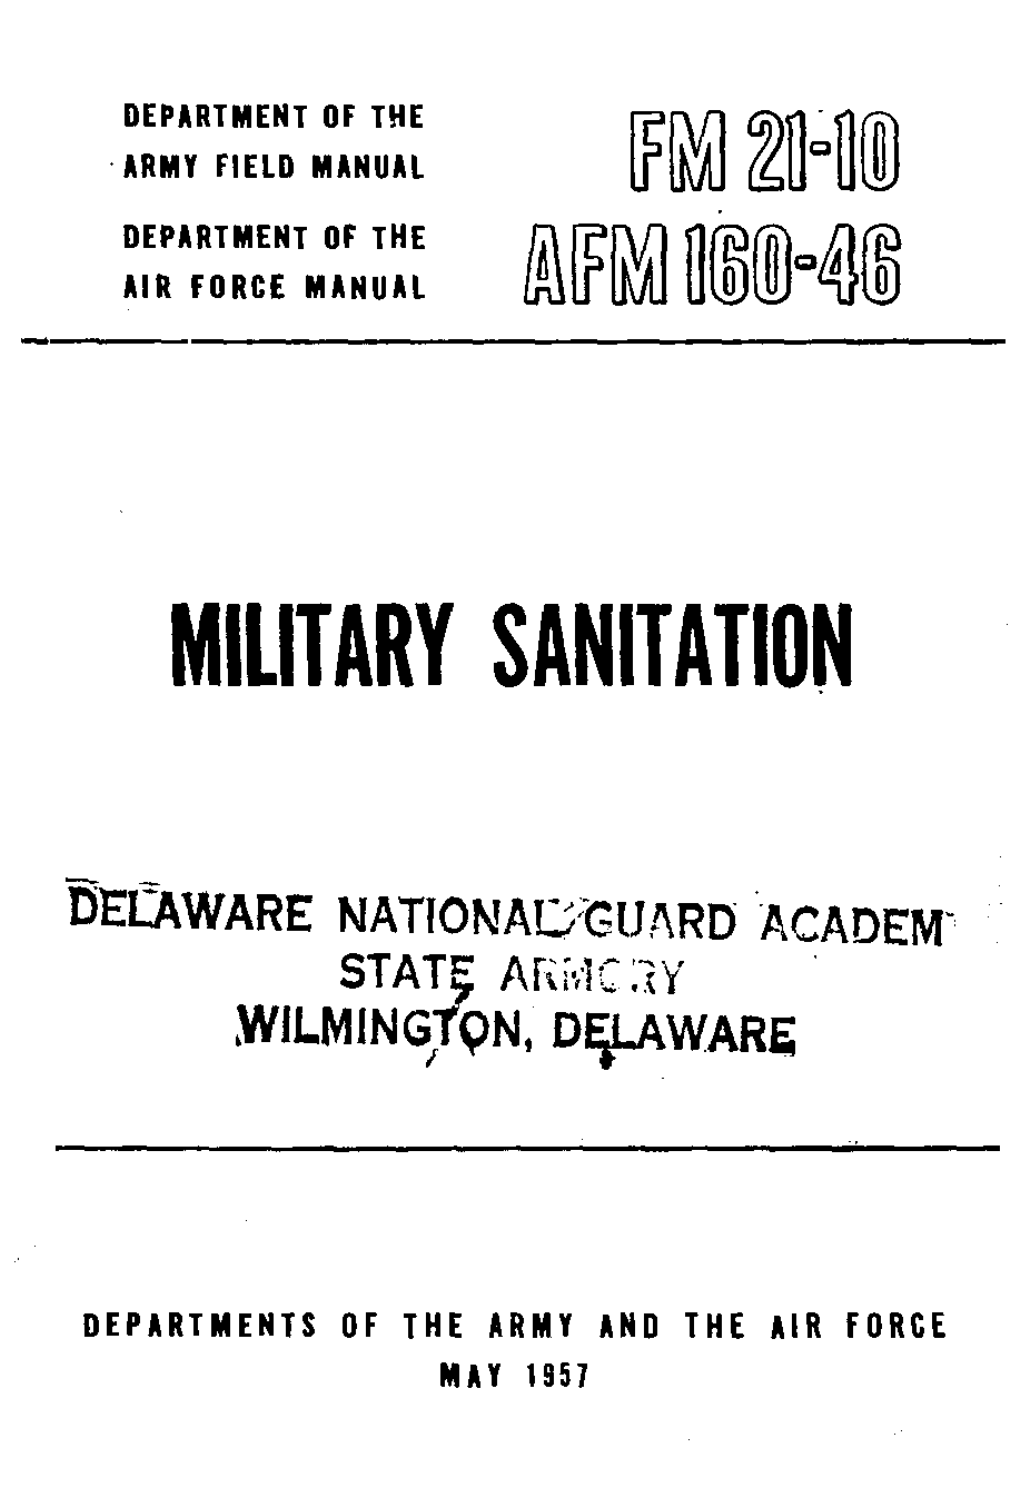 Military Sanitation